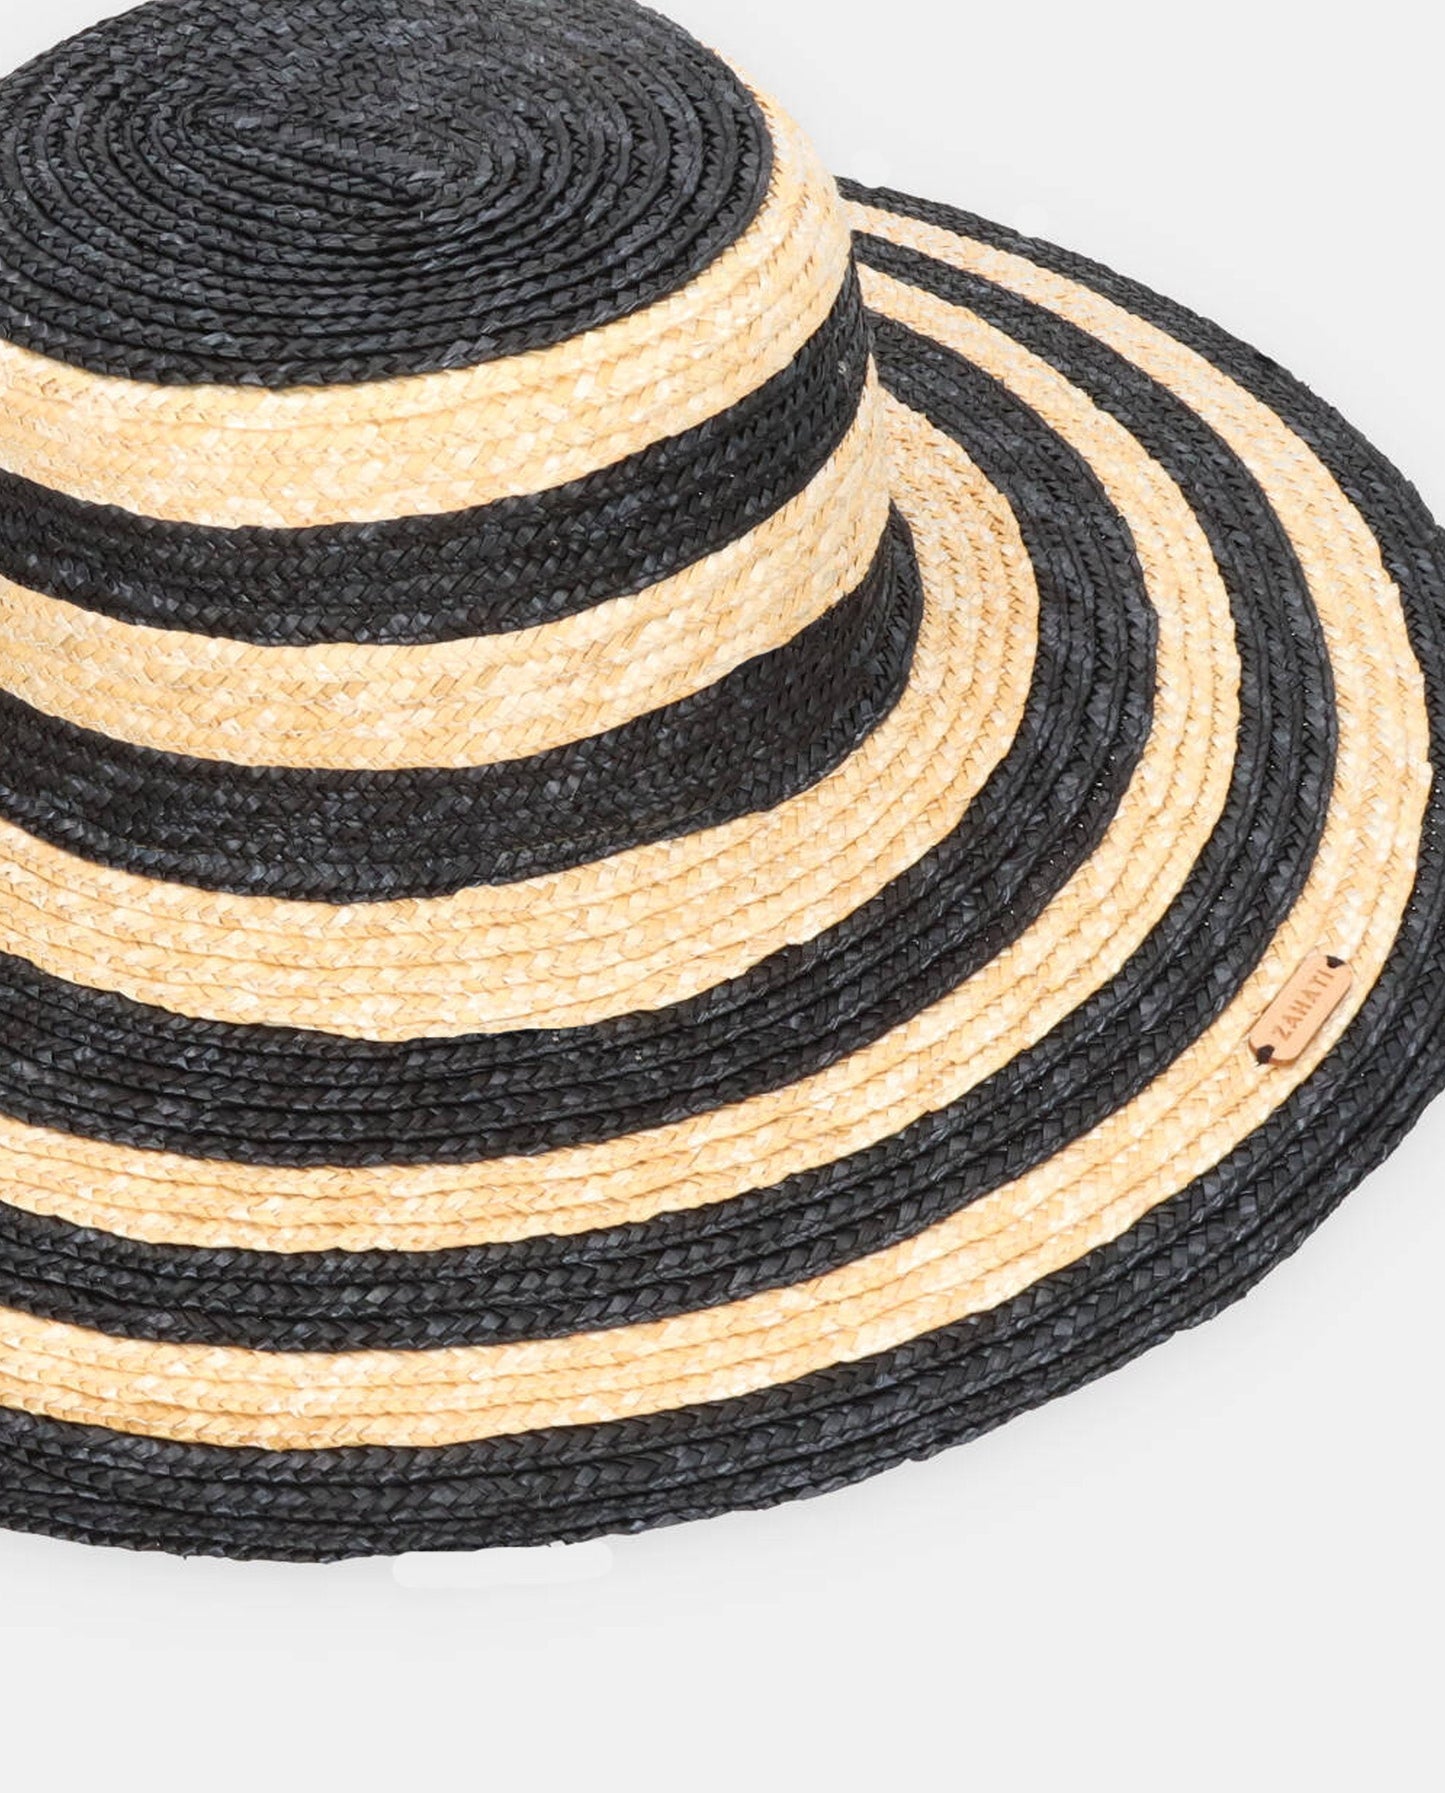 Cuchi hat natural zebra-black brim L